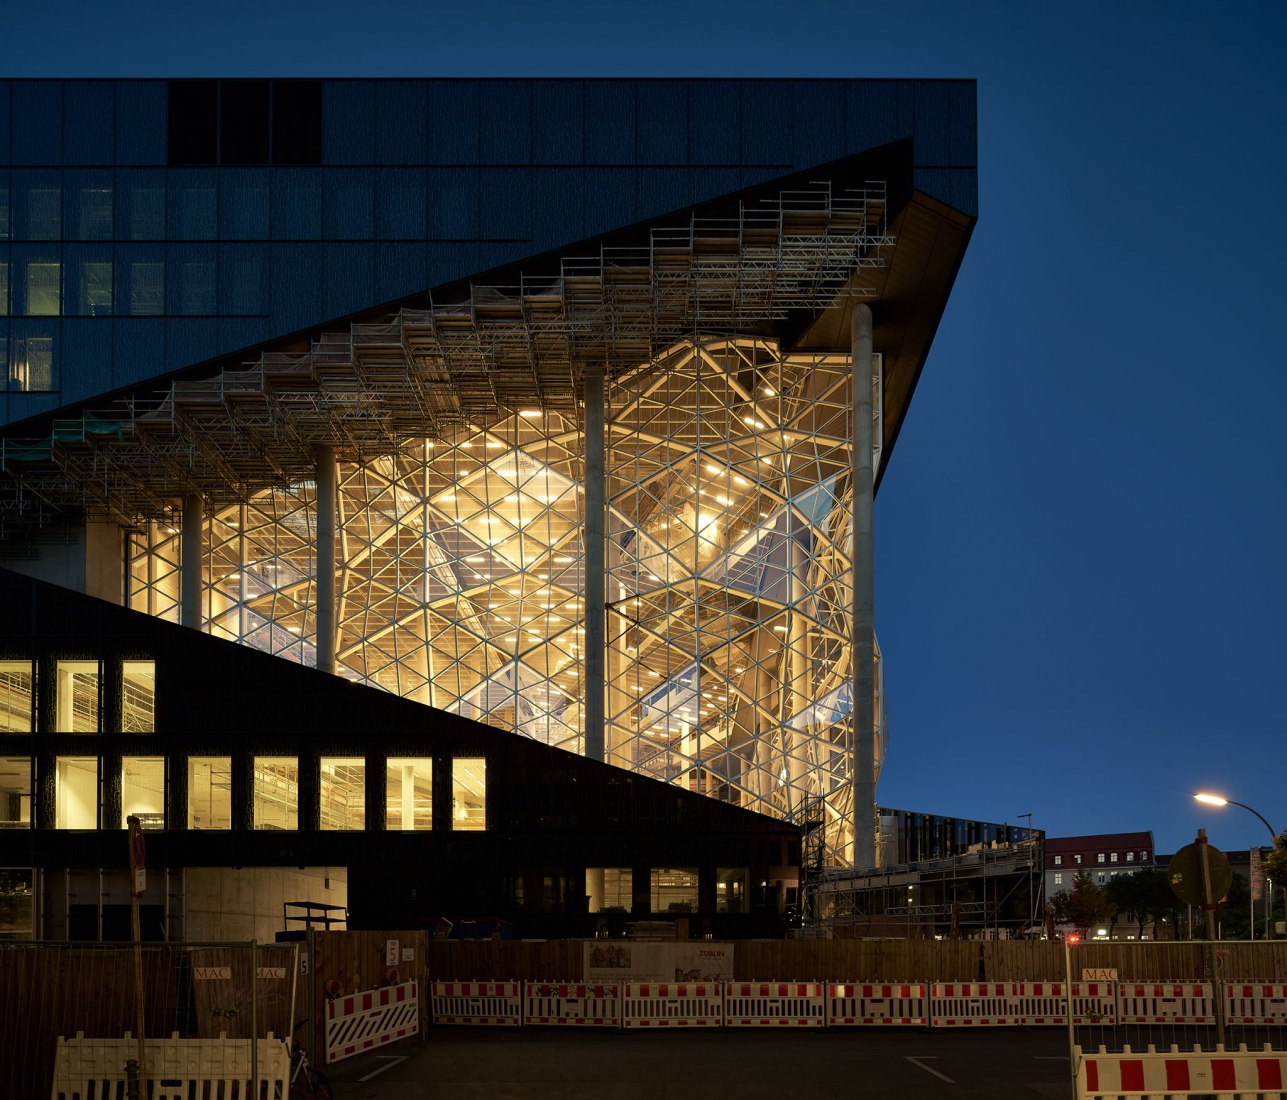 Nuevo edificio Axel Springer diseñado por OMA. Fotografía de Nils Koenning, cortesía de OMA